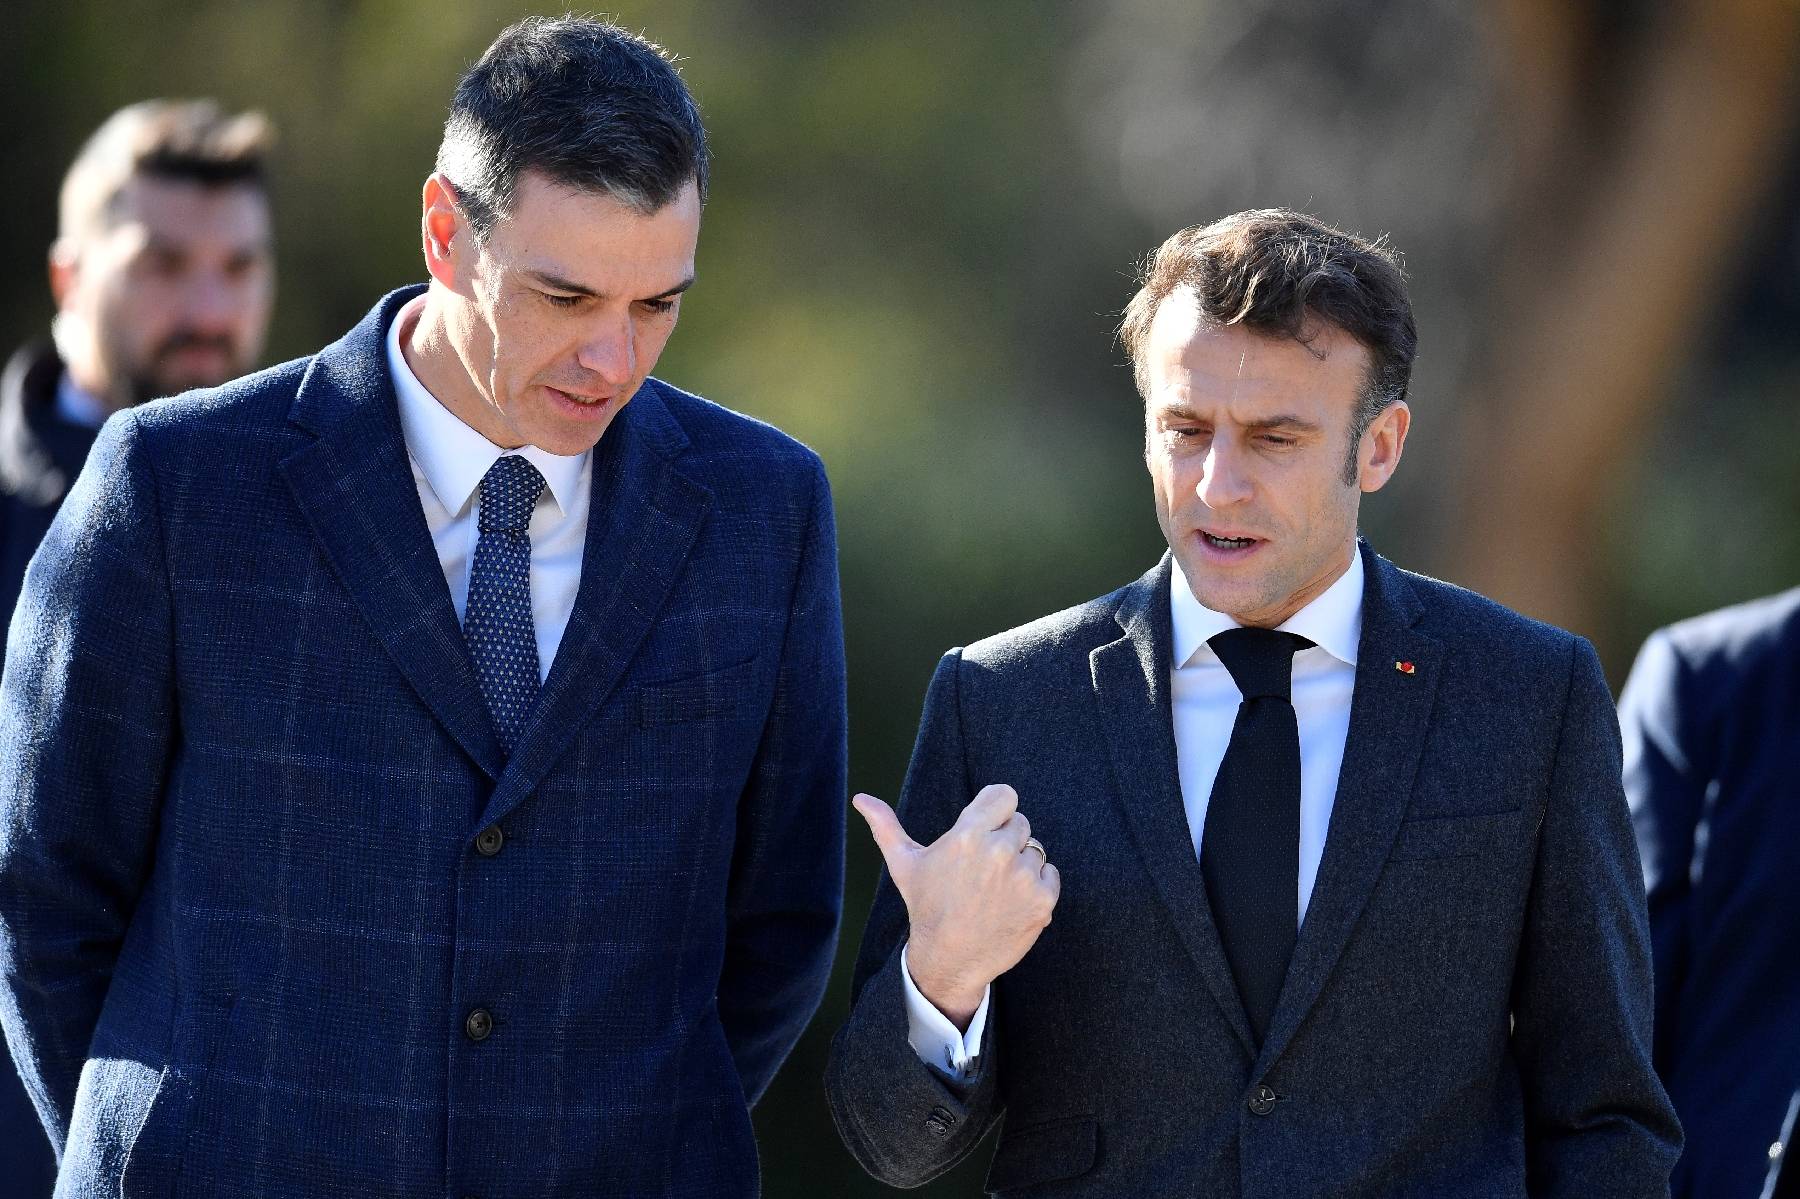 Macron et Sanchez scellent en grande pompe l'amitié franco-espagnole